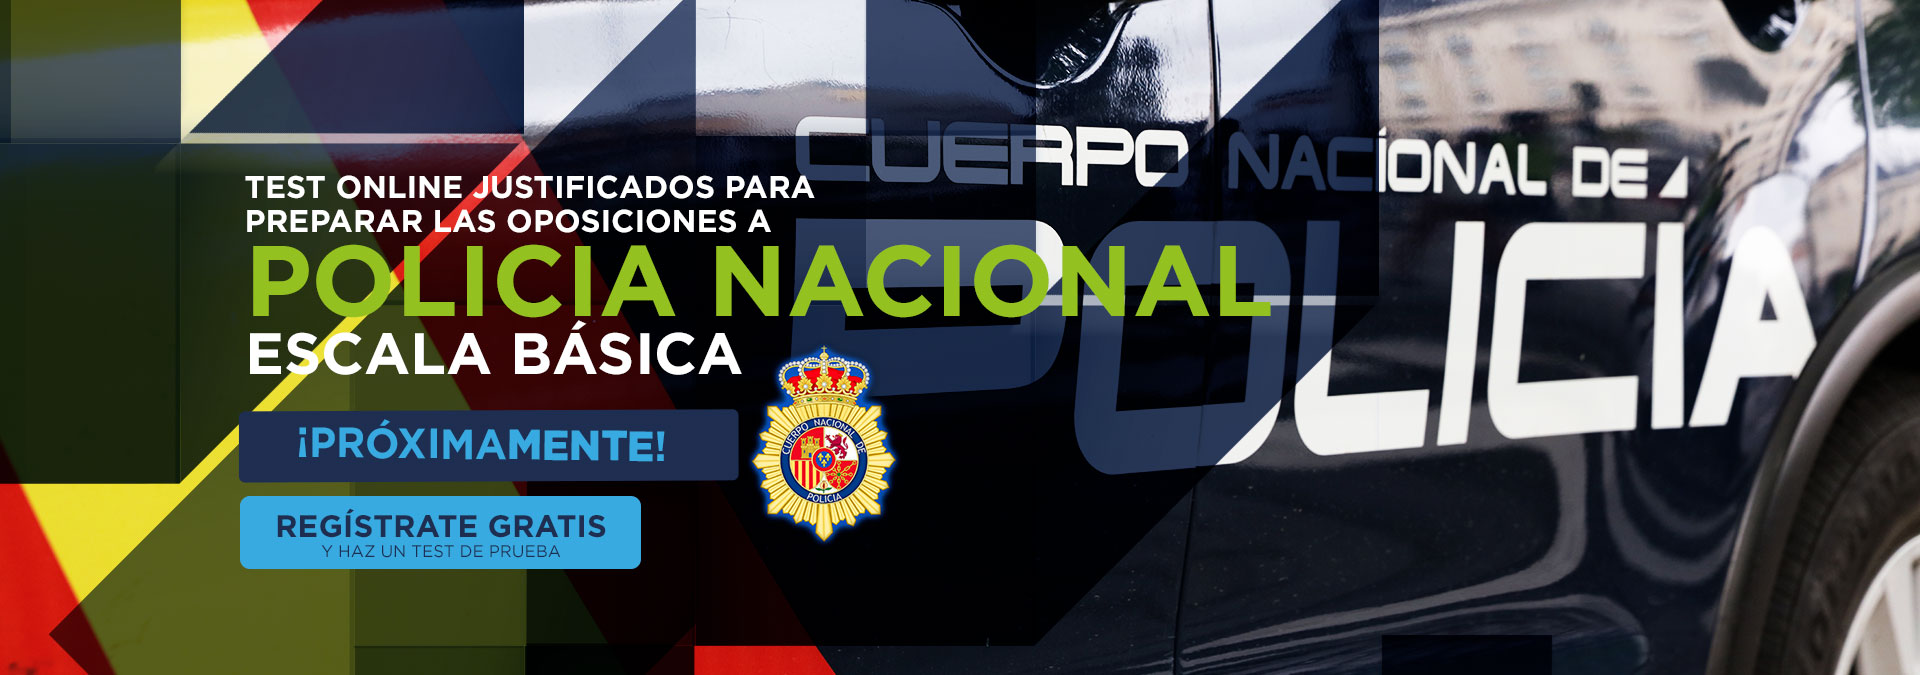 ¡Prueba Gratis! Test online para la preparación de las oposiciones a Policia Nacional, proximamente.